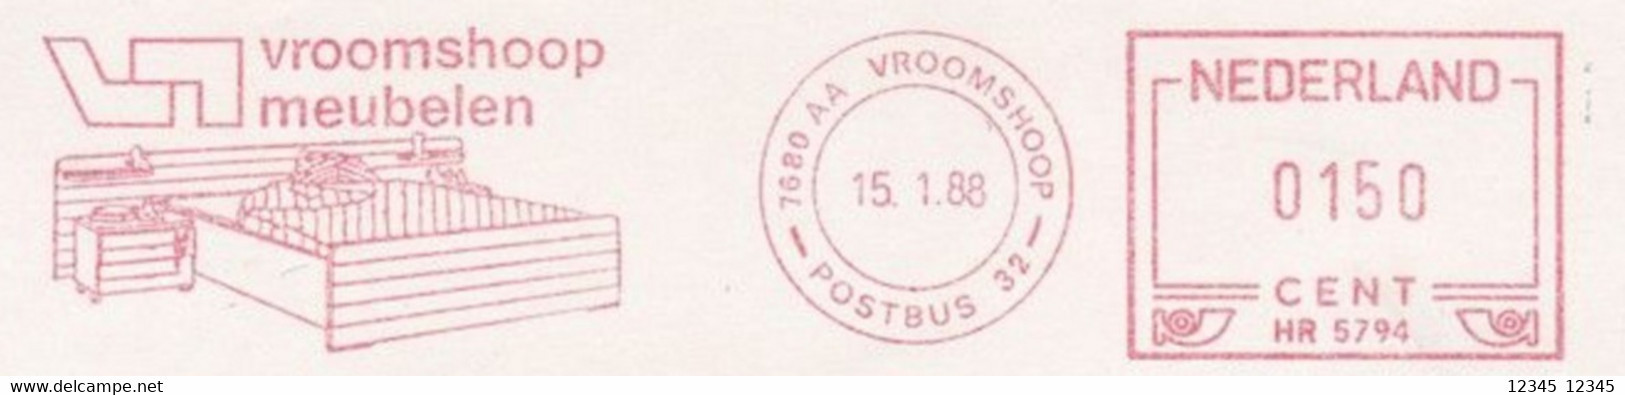 Nederland 1988, Vroomshoop Meubelen, Vroomshoop Furniture - Machines à Affranchir (EMA)